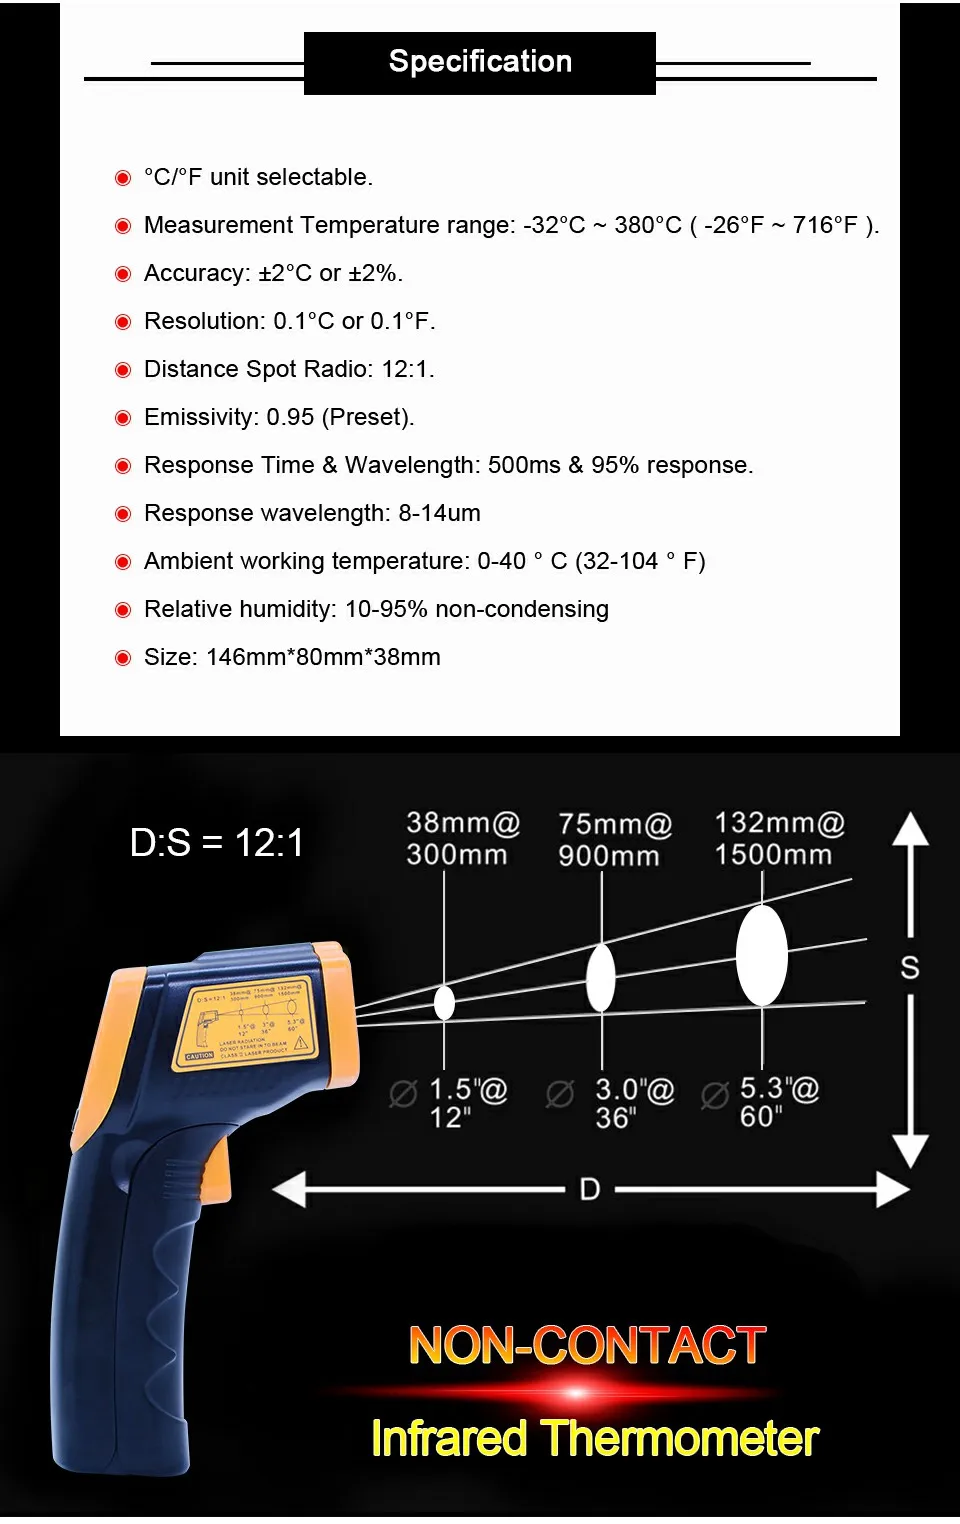 AR320 инфракрасный термометр цифровой ИК термометр Бесконтактный ИК лазерный точечный пистолет пирометр-32C~ 380C(-26F-716F) Удержание данных